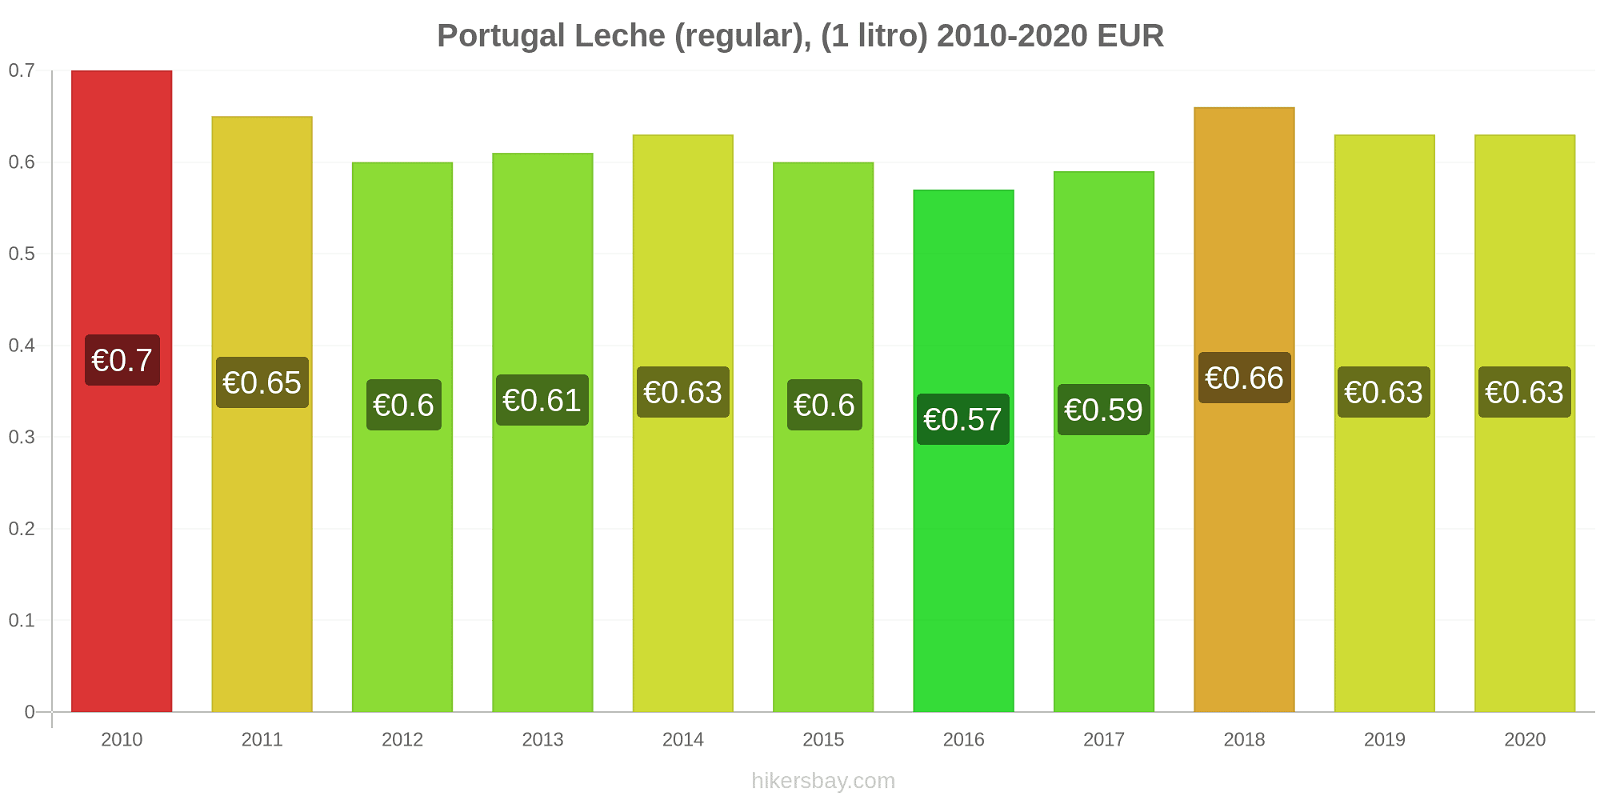 Portugal cambios de precios Leche (Regular), (1 litro) hikersbay.com